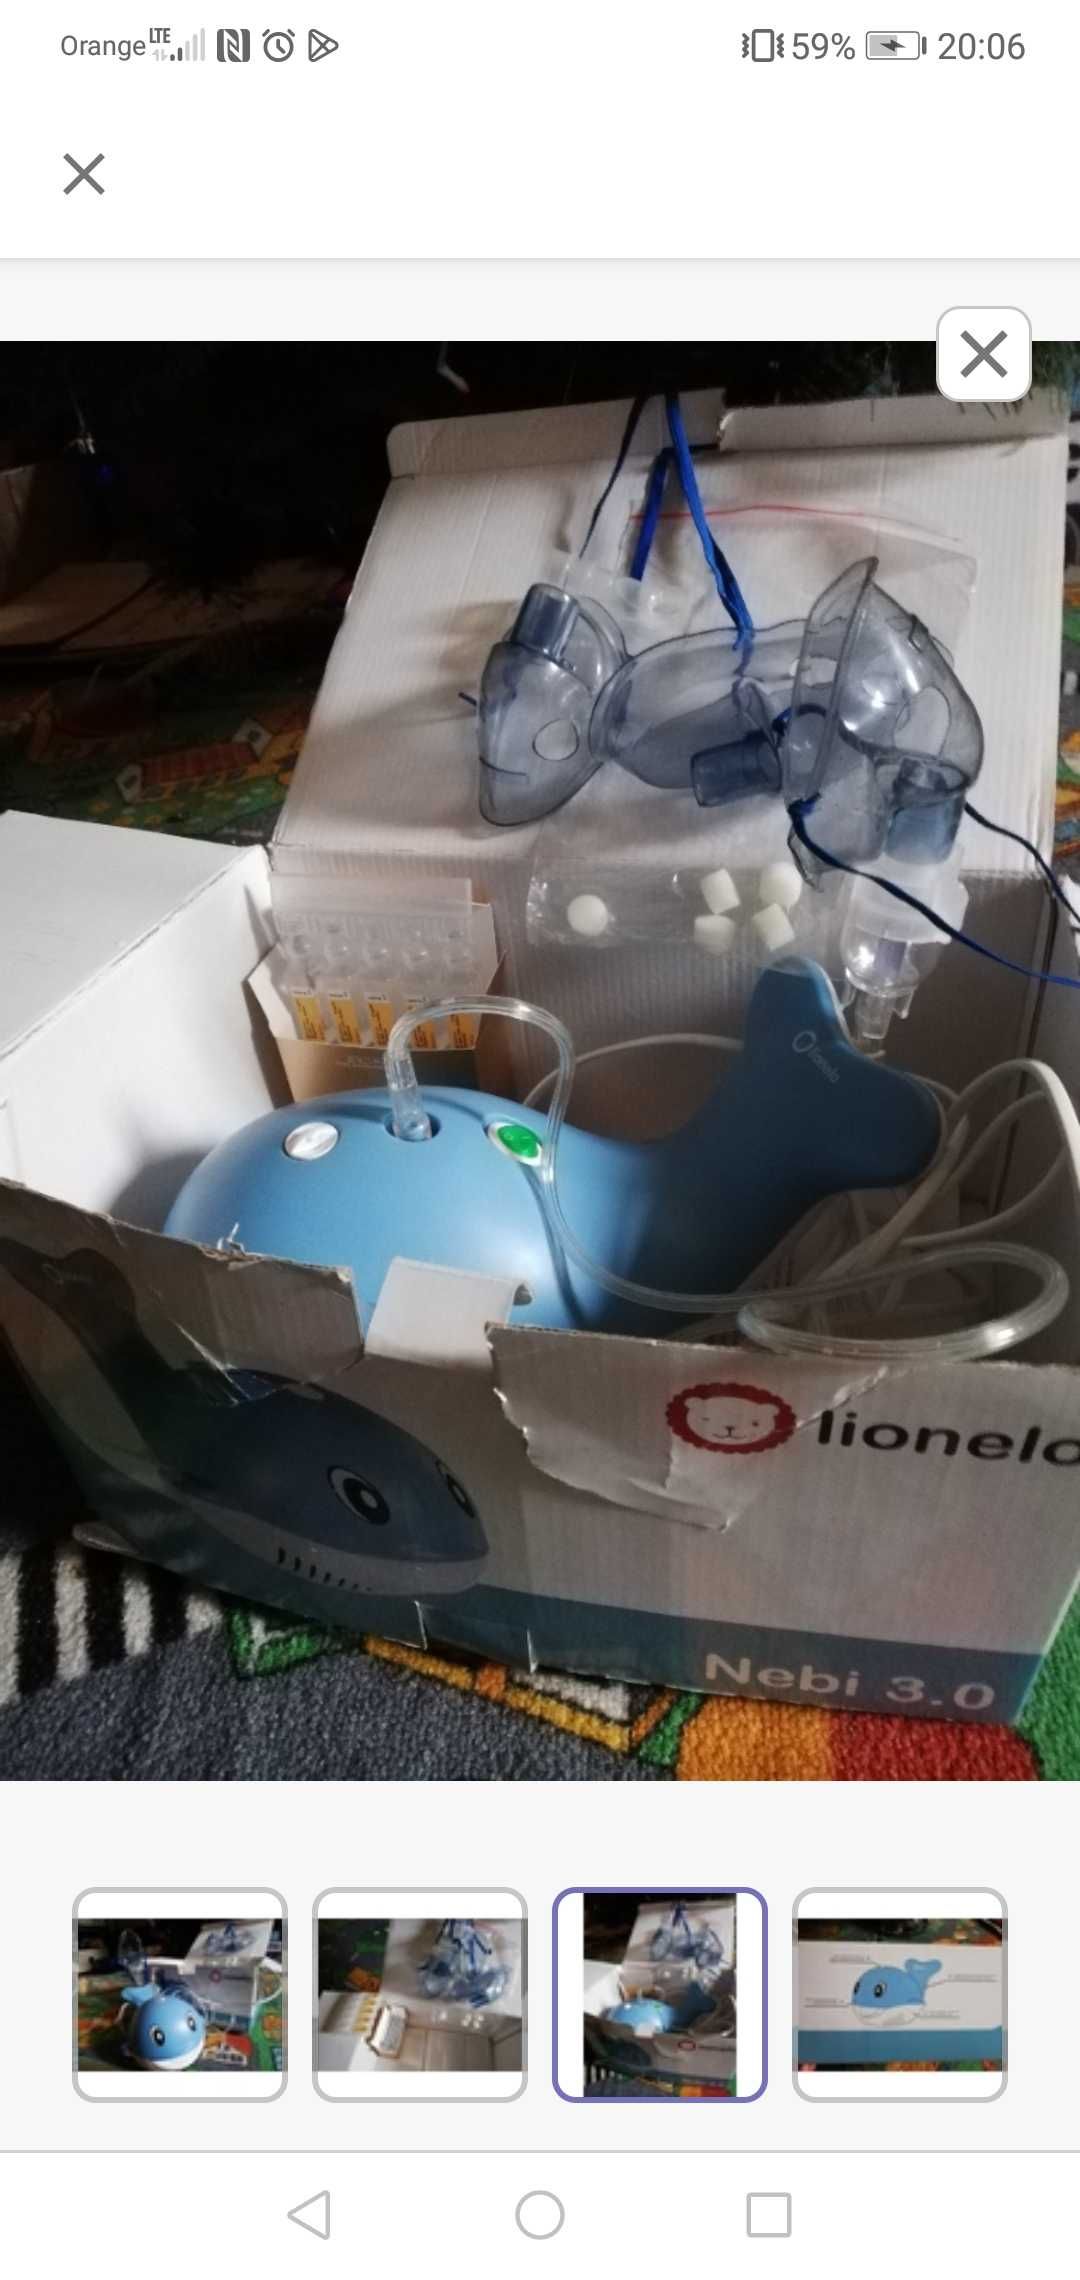 Lionelo Nebi 3.0 Nebulizator inhalator